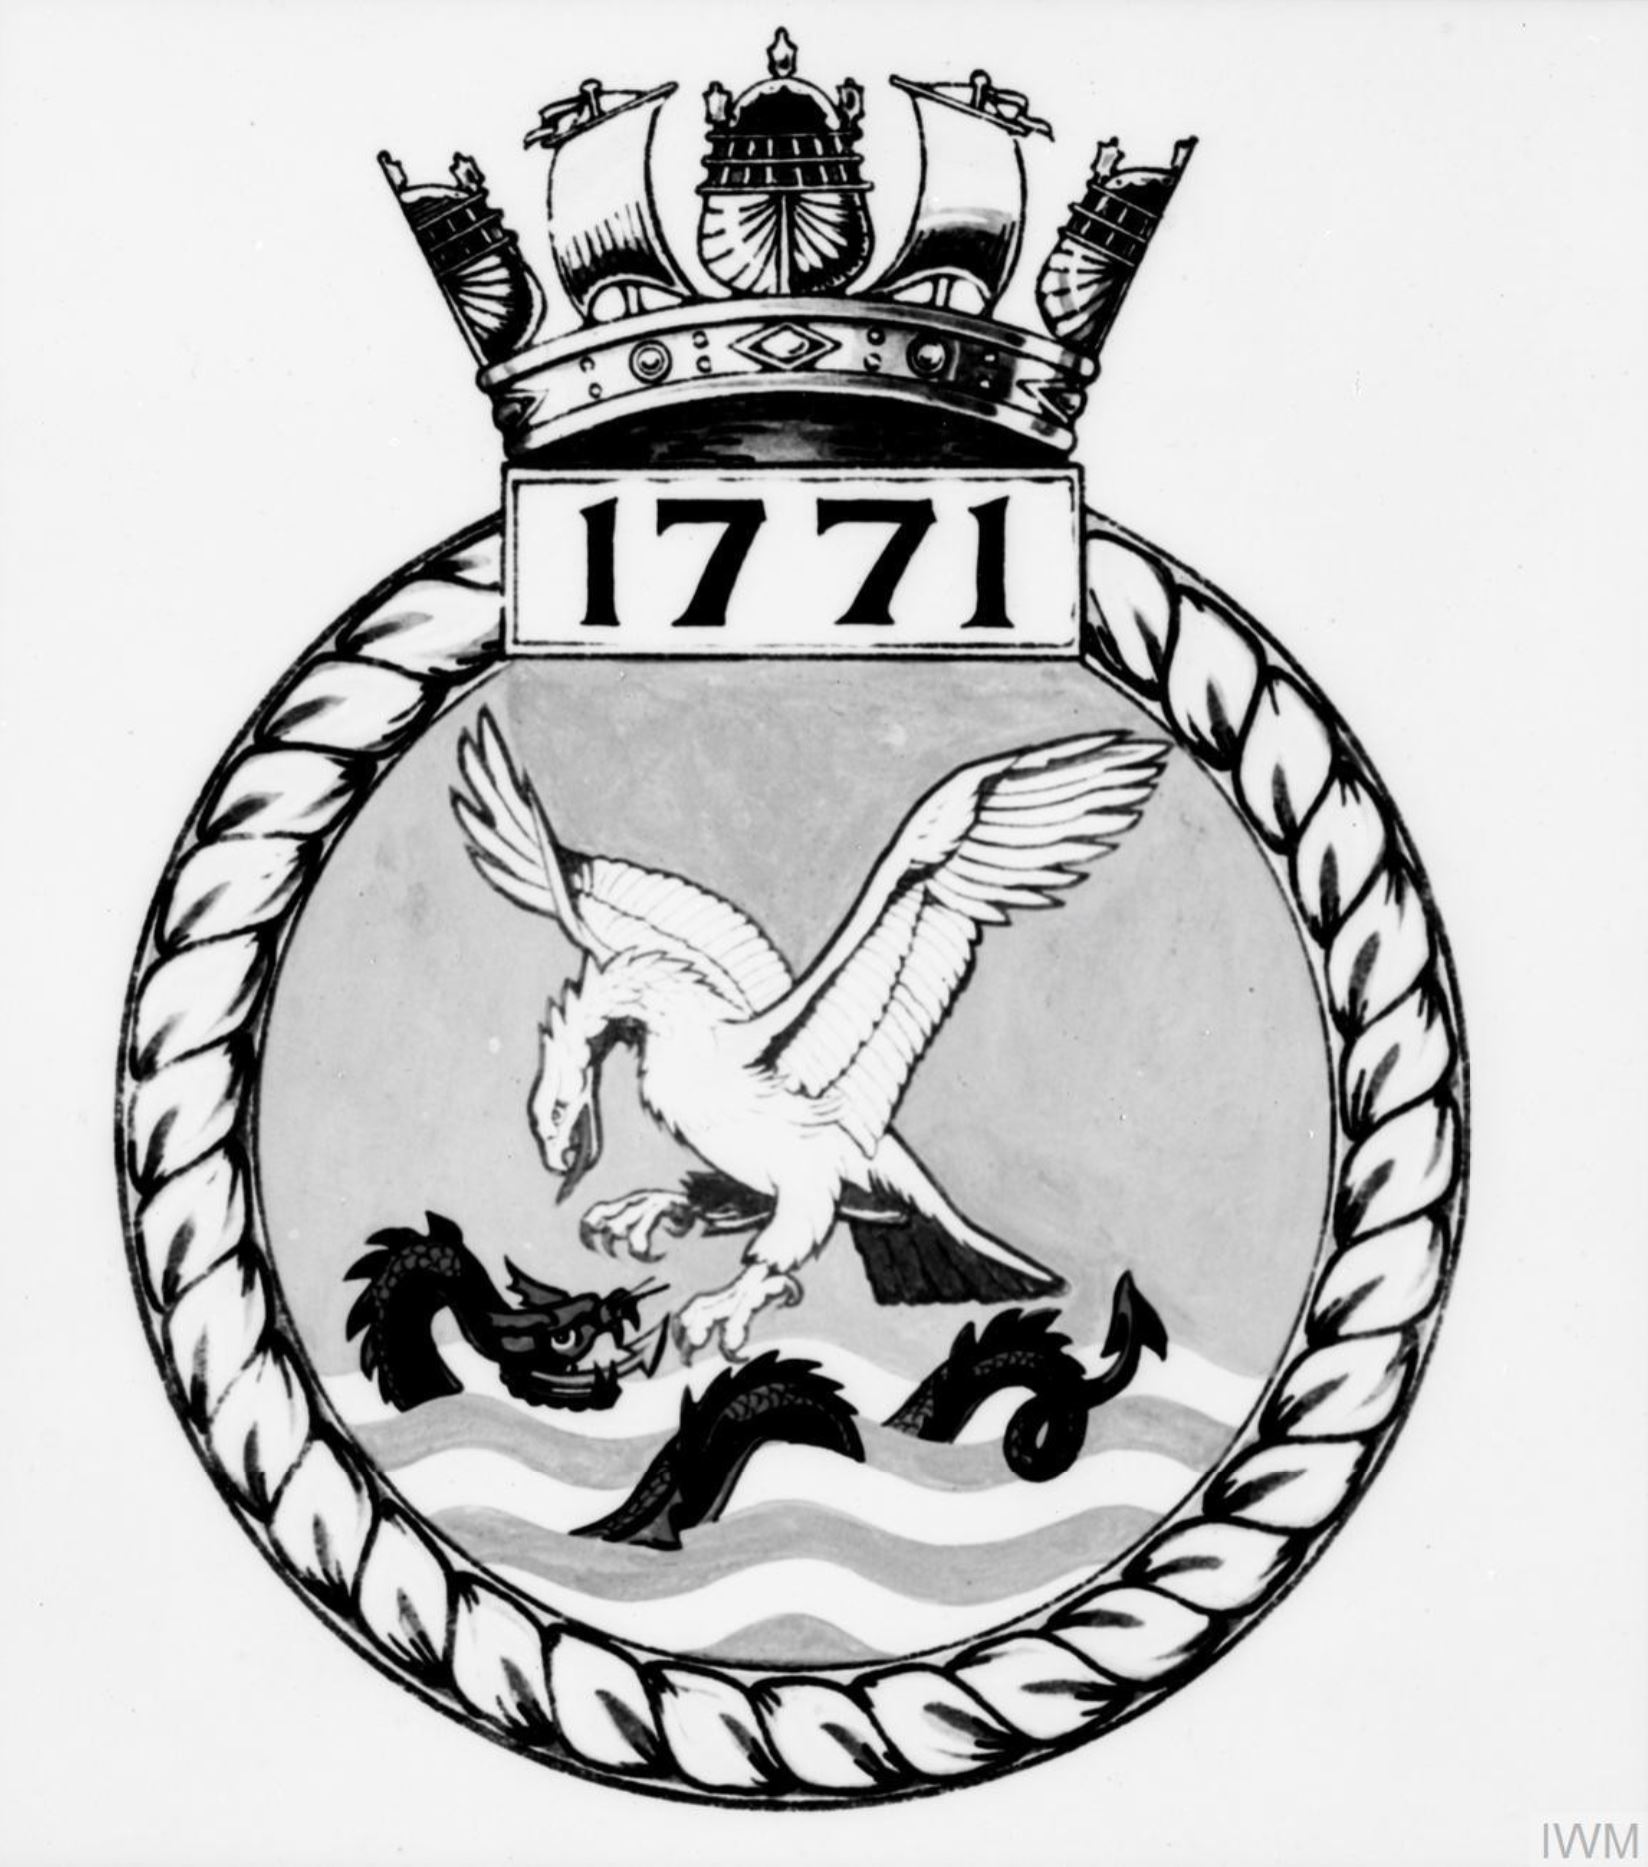 Fleet Air Arm crest of 1771 Squadron IWM A26798